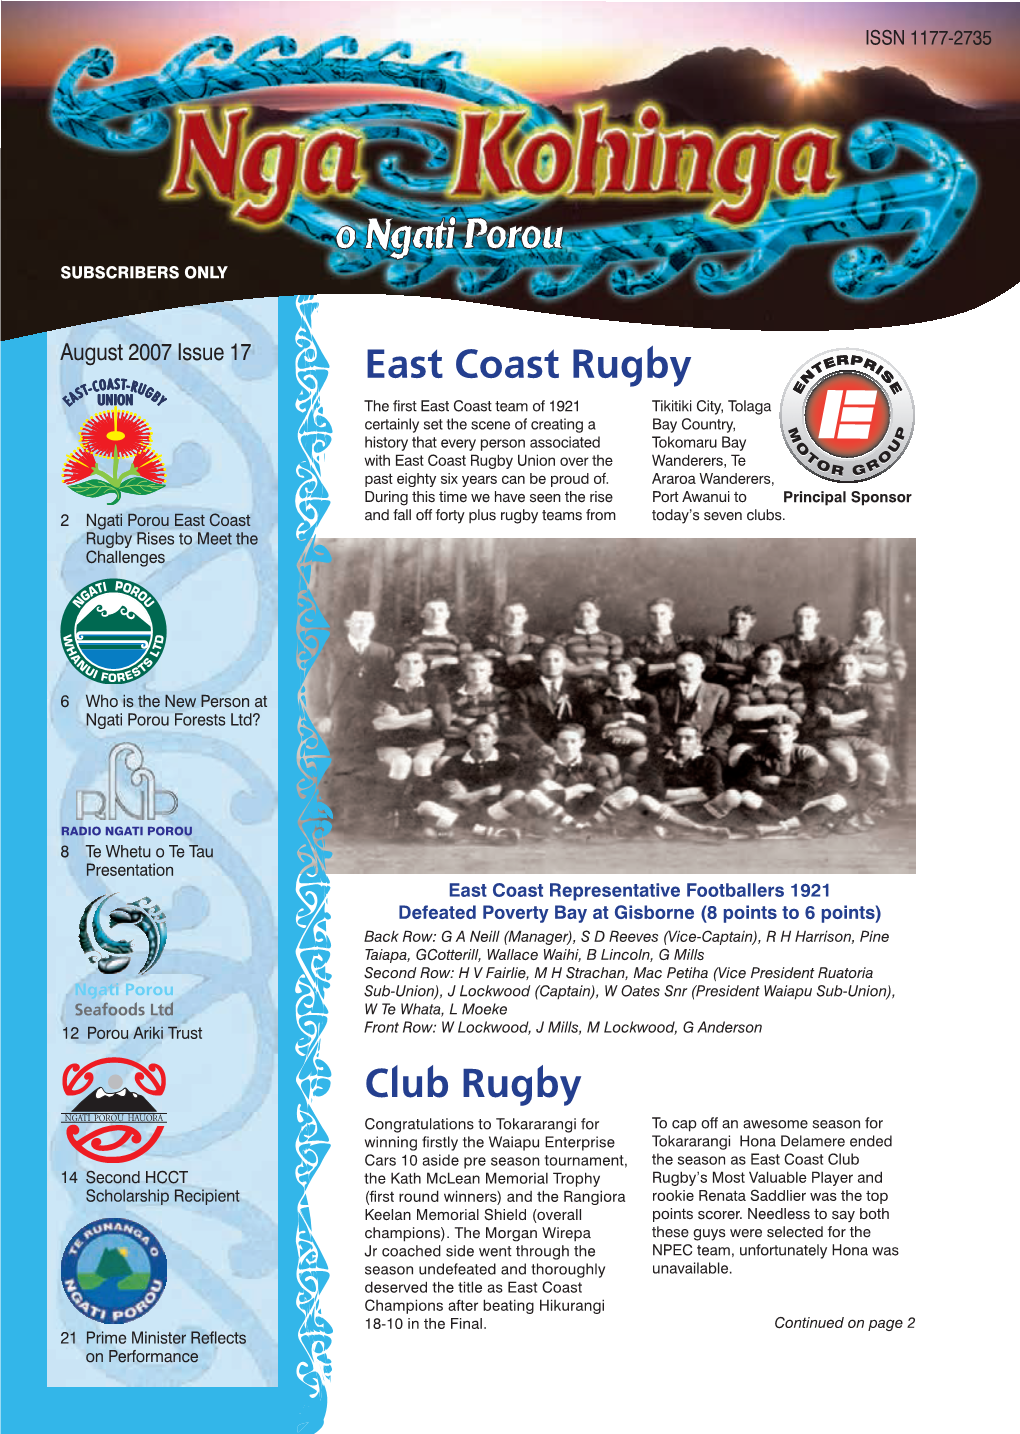 East Coast Rugby Club Rugby